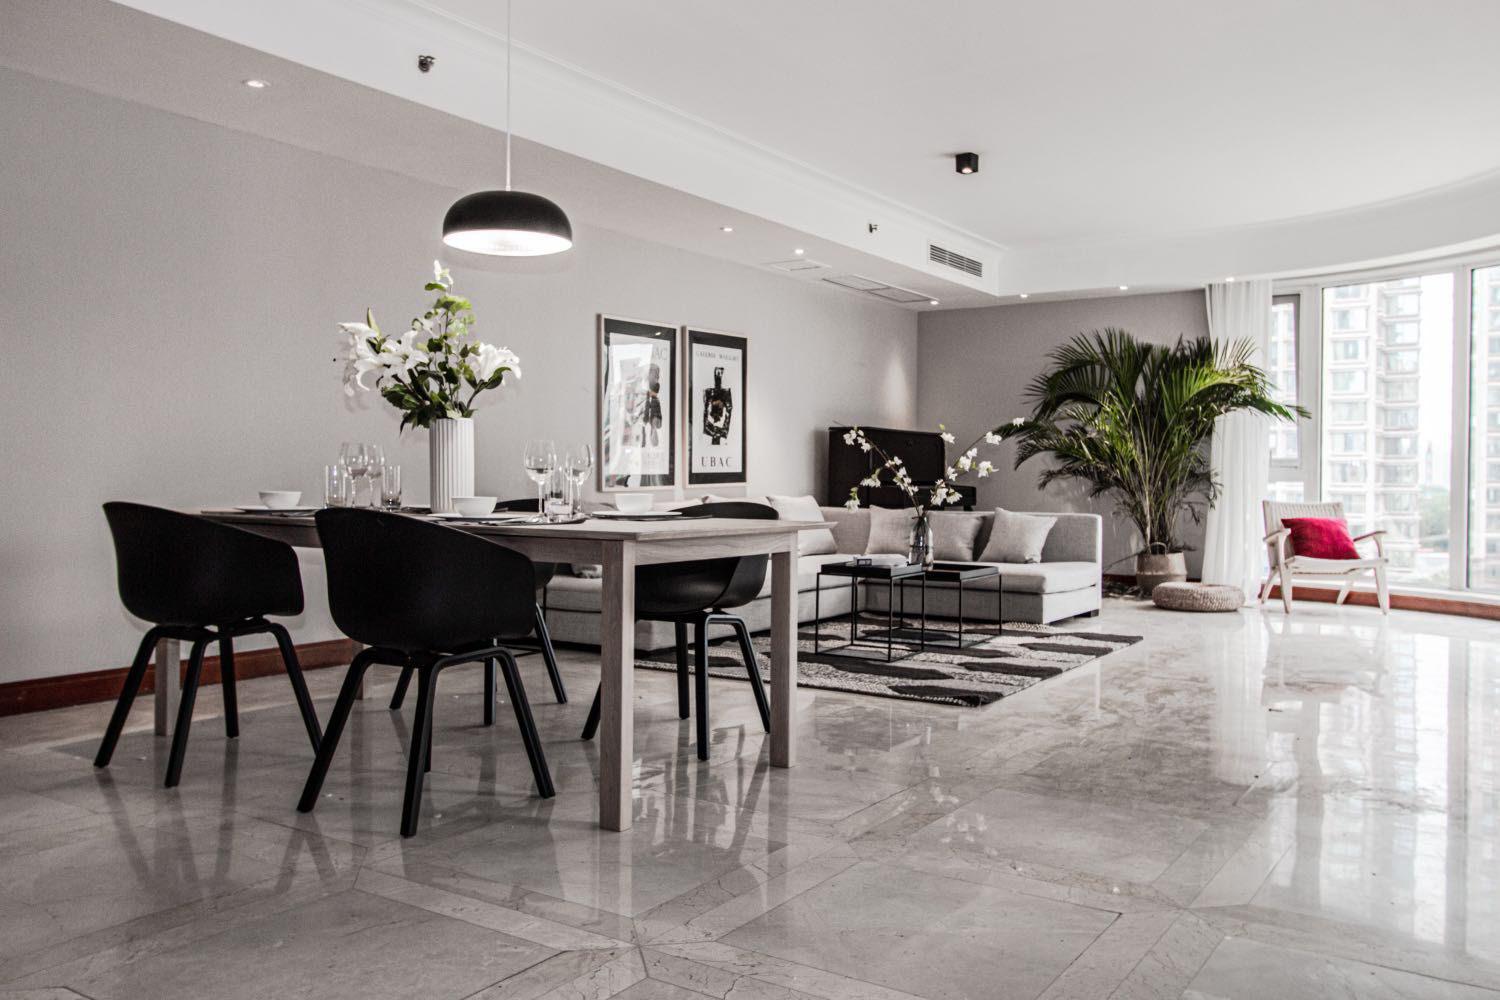 棕榈泉 精装通透大三居 全新出租 空置可看-棕榈泉国际公寓租房